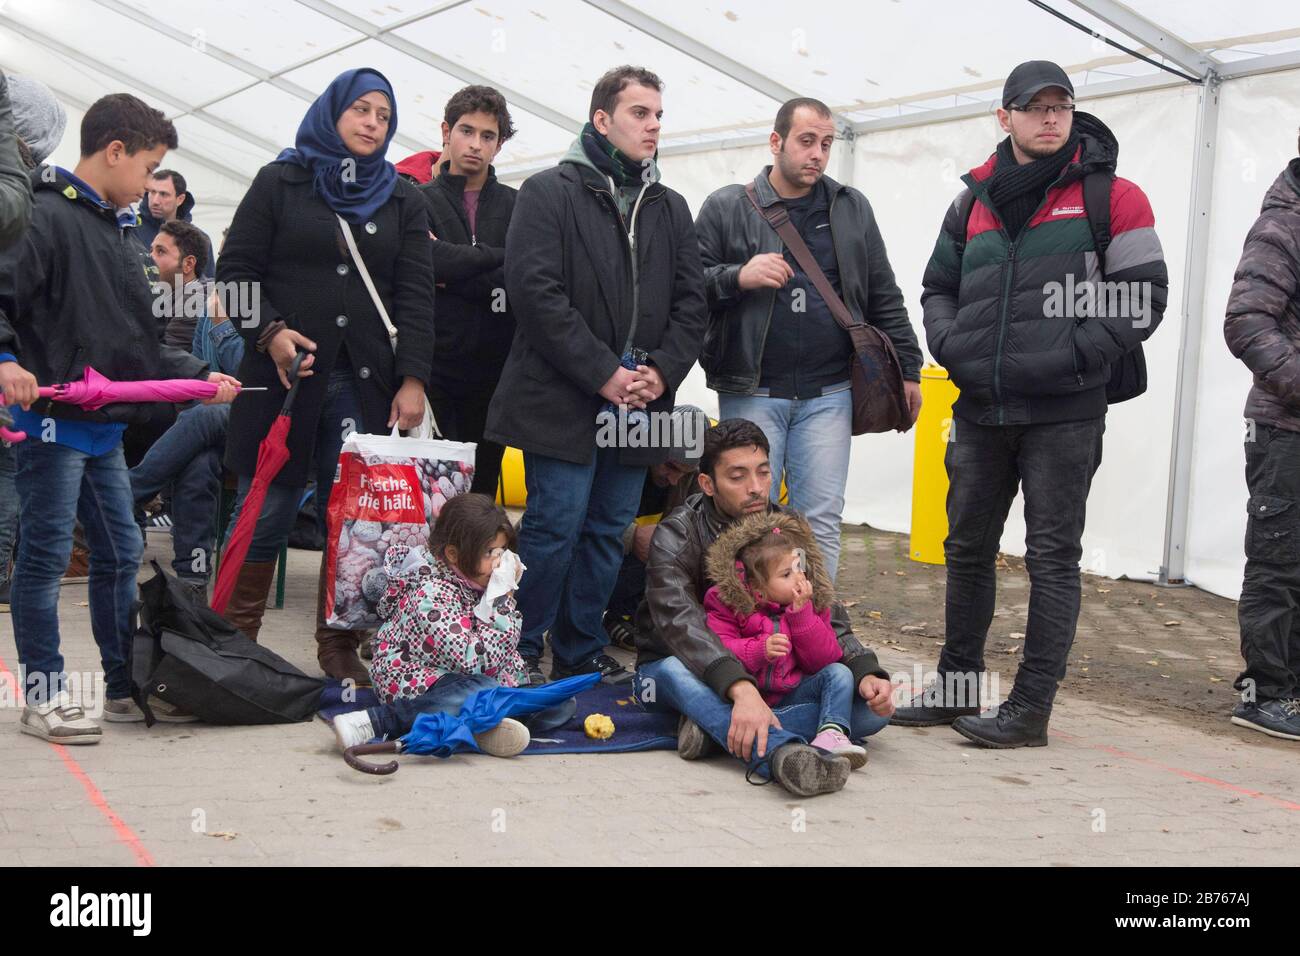 Une famille de réfugiés avec enfants attend dans une tente le 15.10.2015 au Bureau d'État de la santé et des affaires sociales de Berlin, LaGeSo, pour son inscription. [traduction automatique] Banque D'Images